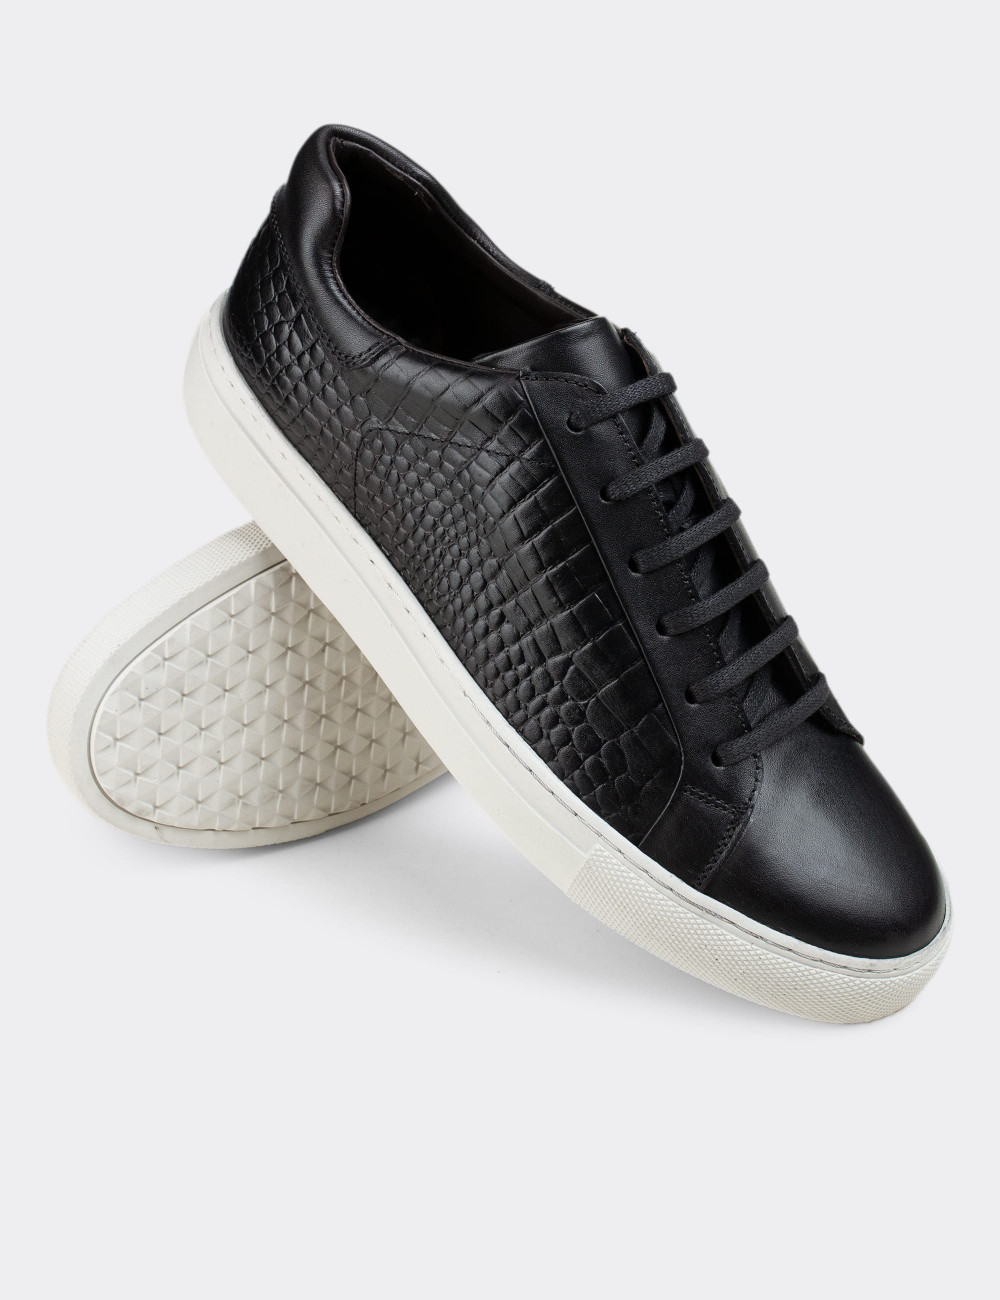 Hakiki Deri Siyah Sneaker Erkek Ayakkabı - 01829MSYHC02